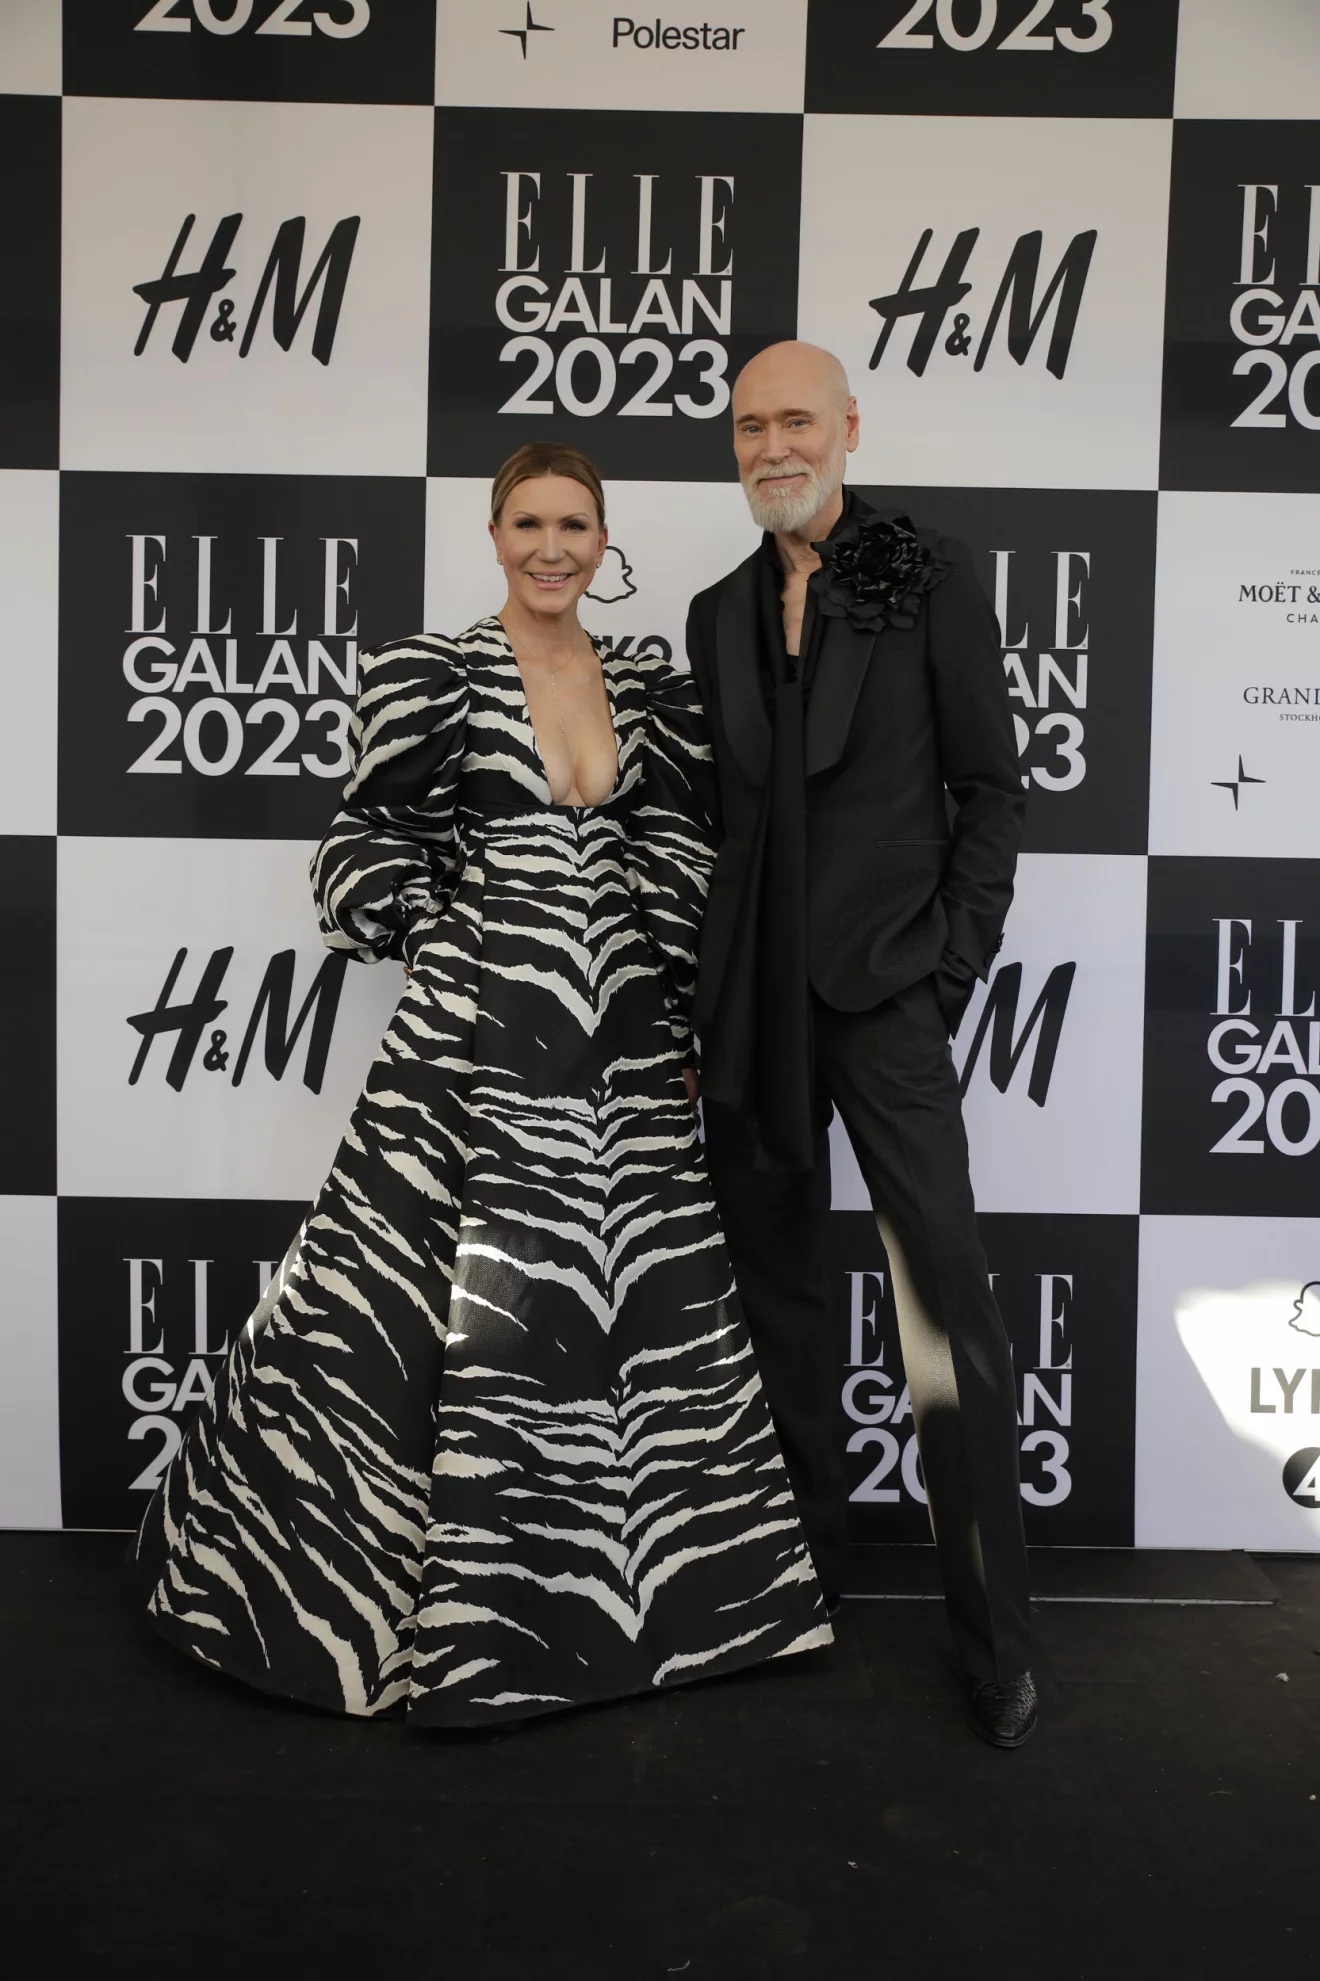 ELLE-galan 2023 röda mattan Jenny Alversjö och Lars Wallin.